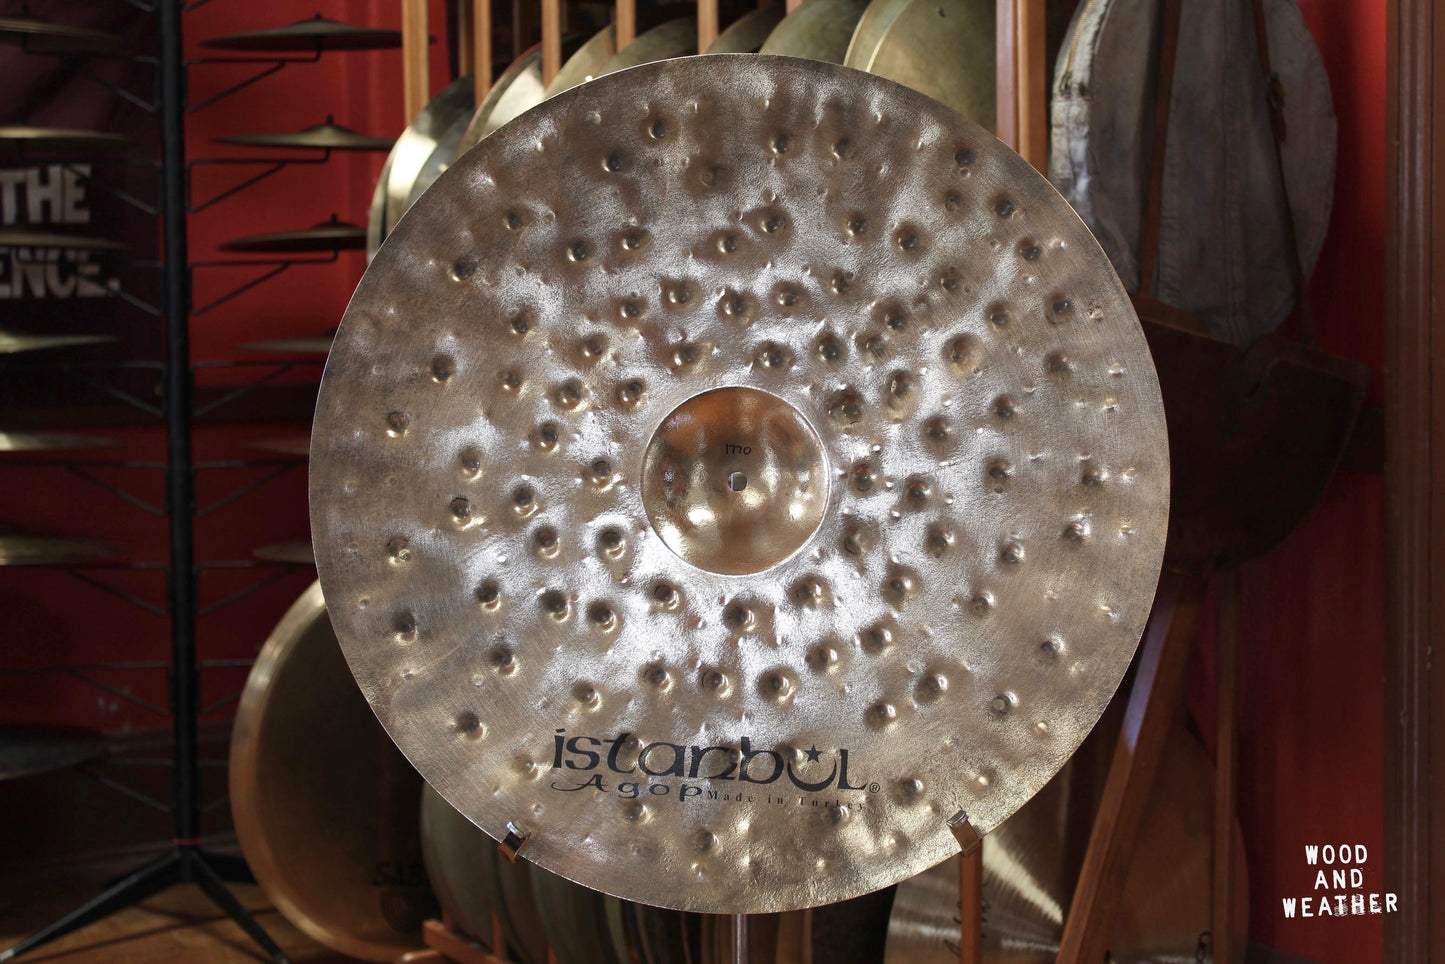 Istanbul Agop 22" Xist Dry Dark Brilliant Crash Cymbal 1770g